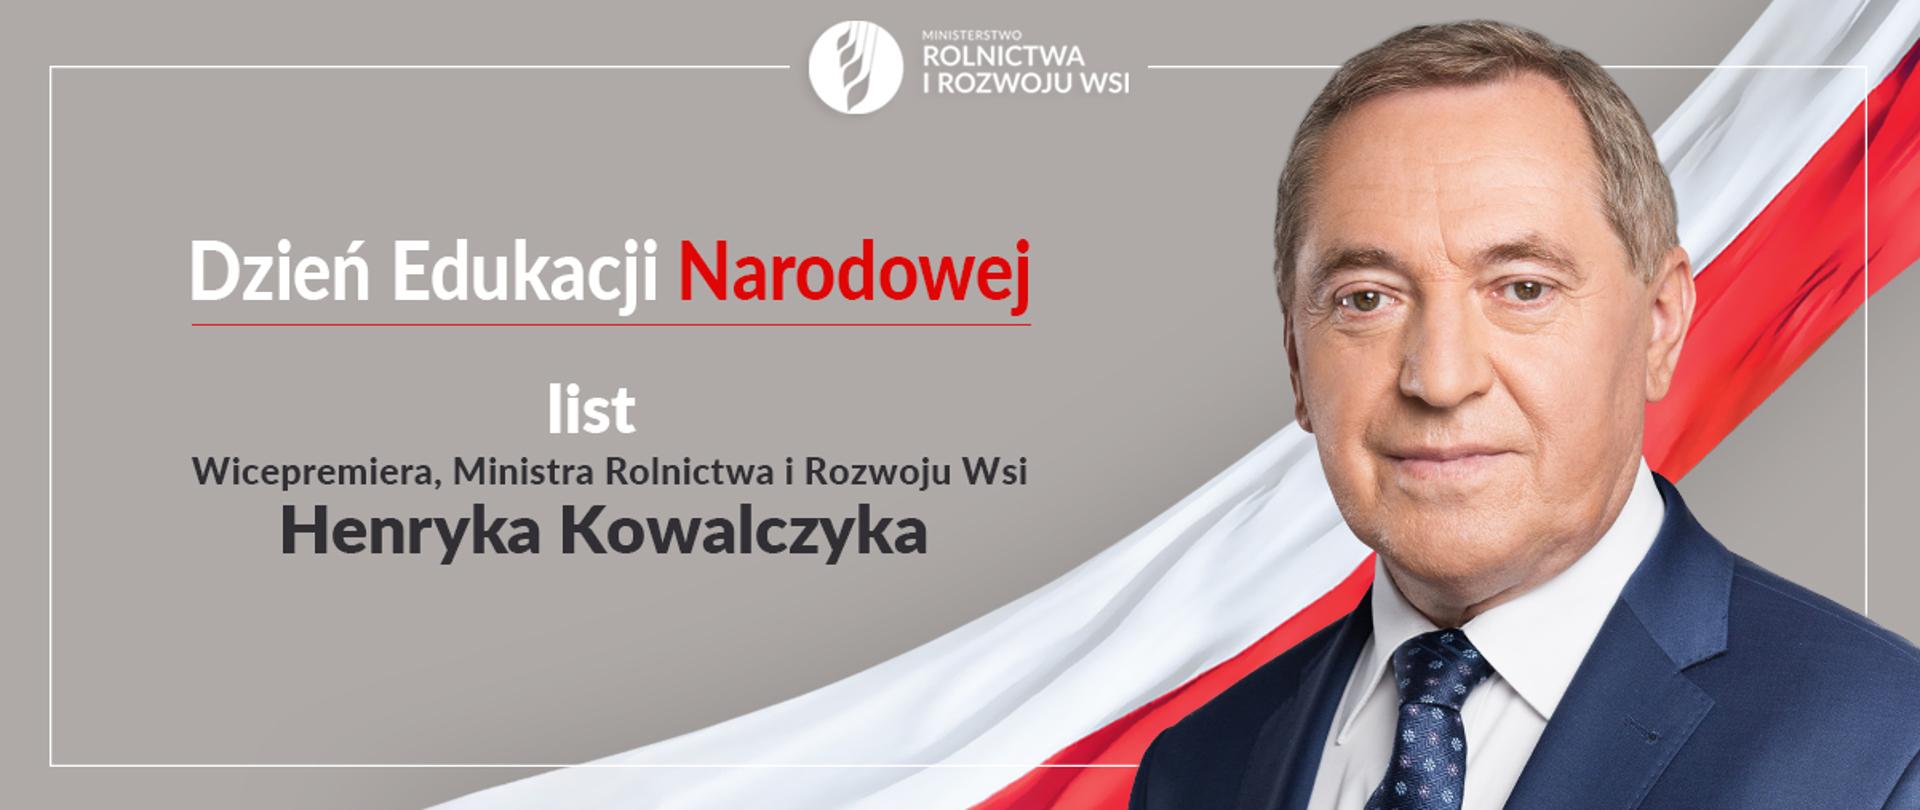 wicepremier, minister rolnictwa i rozwoju wsi Henryk Kowalczyk na tle flagi biało-czerwonej